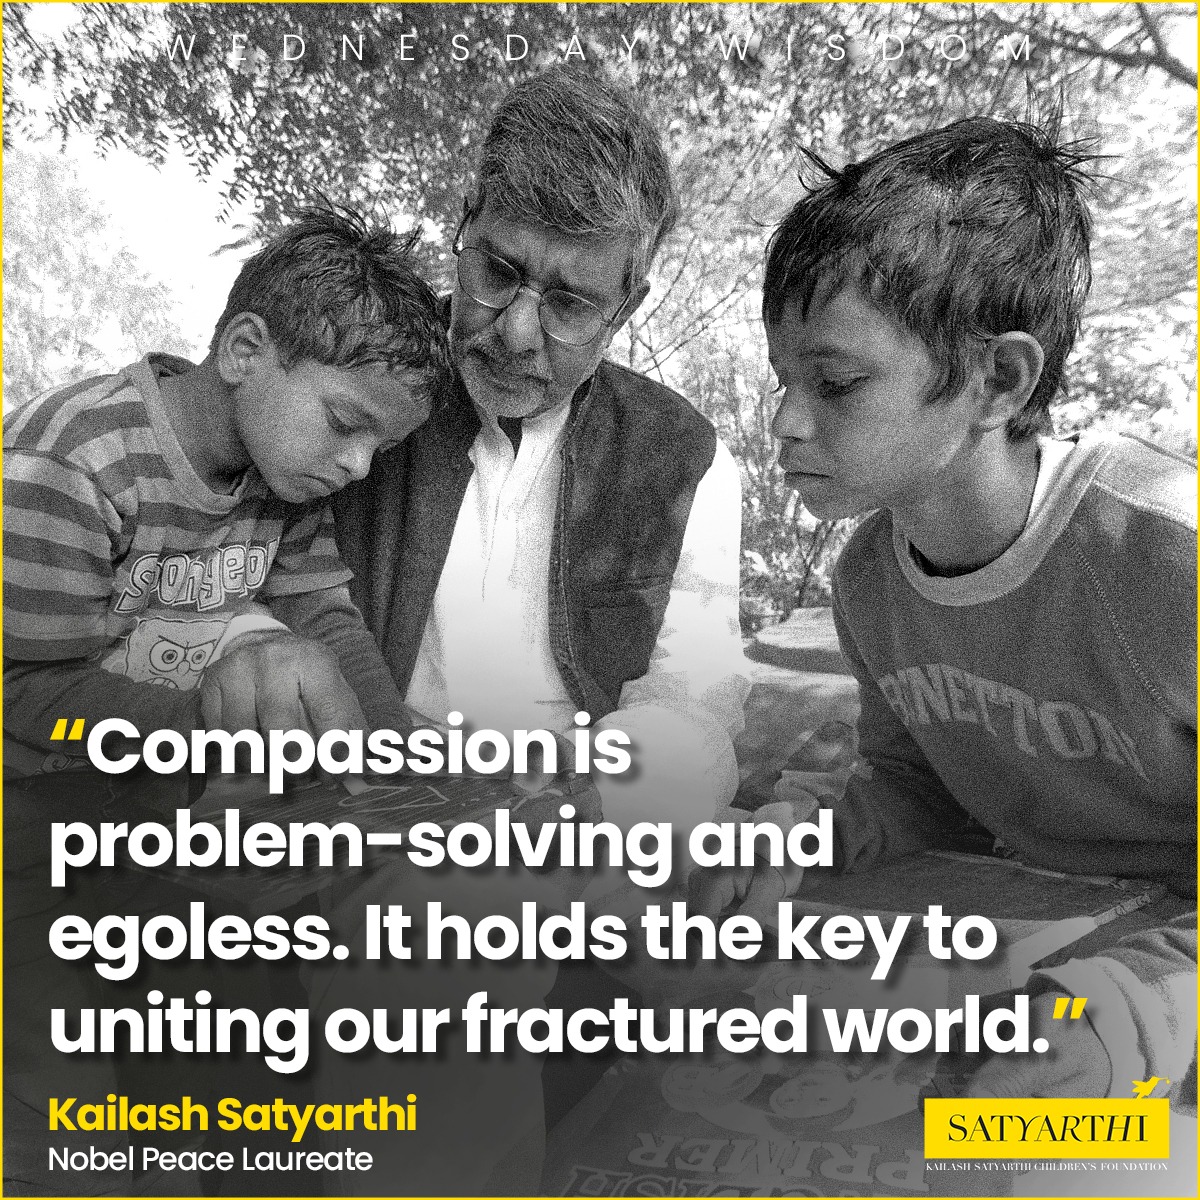 💯🙏
#Kailashsatyarthi #WednesdayWisdom #compassion